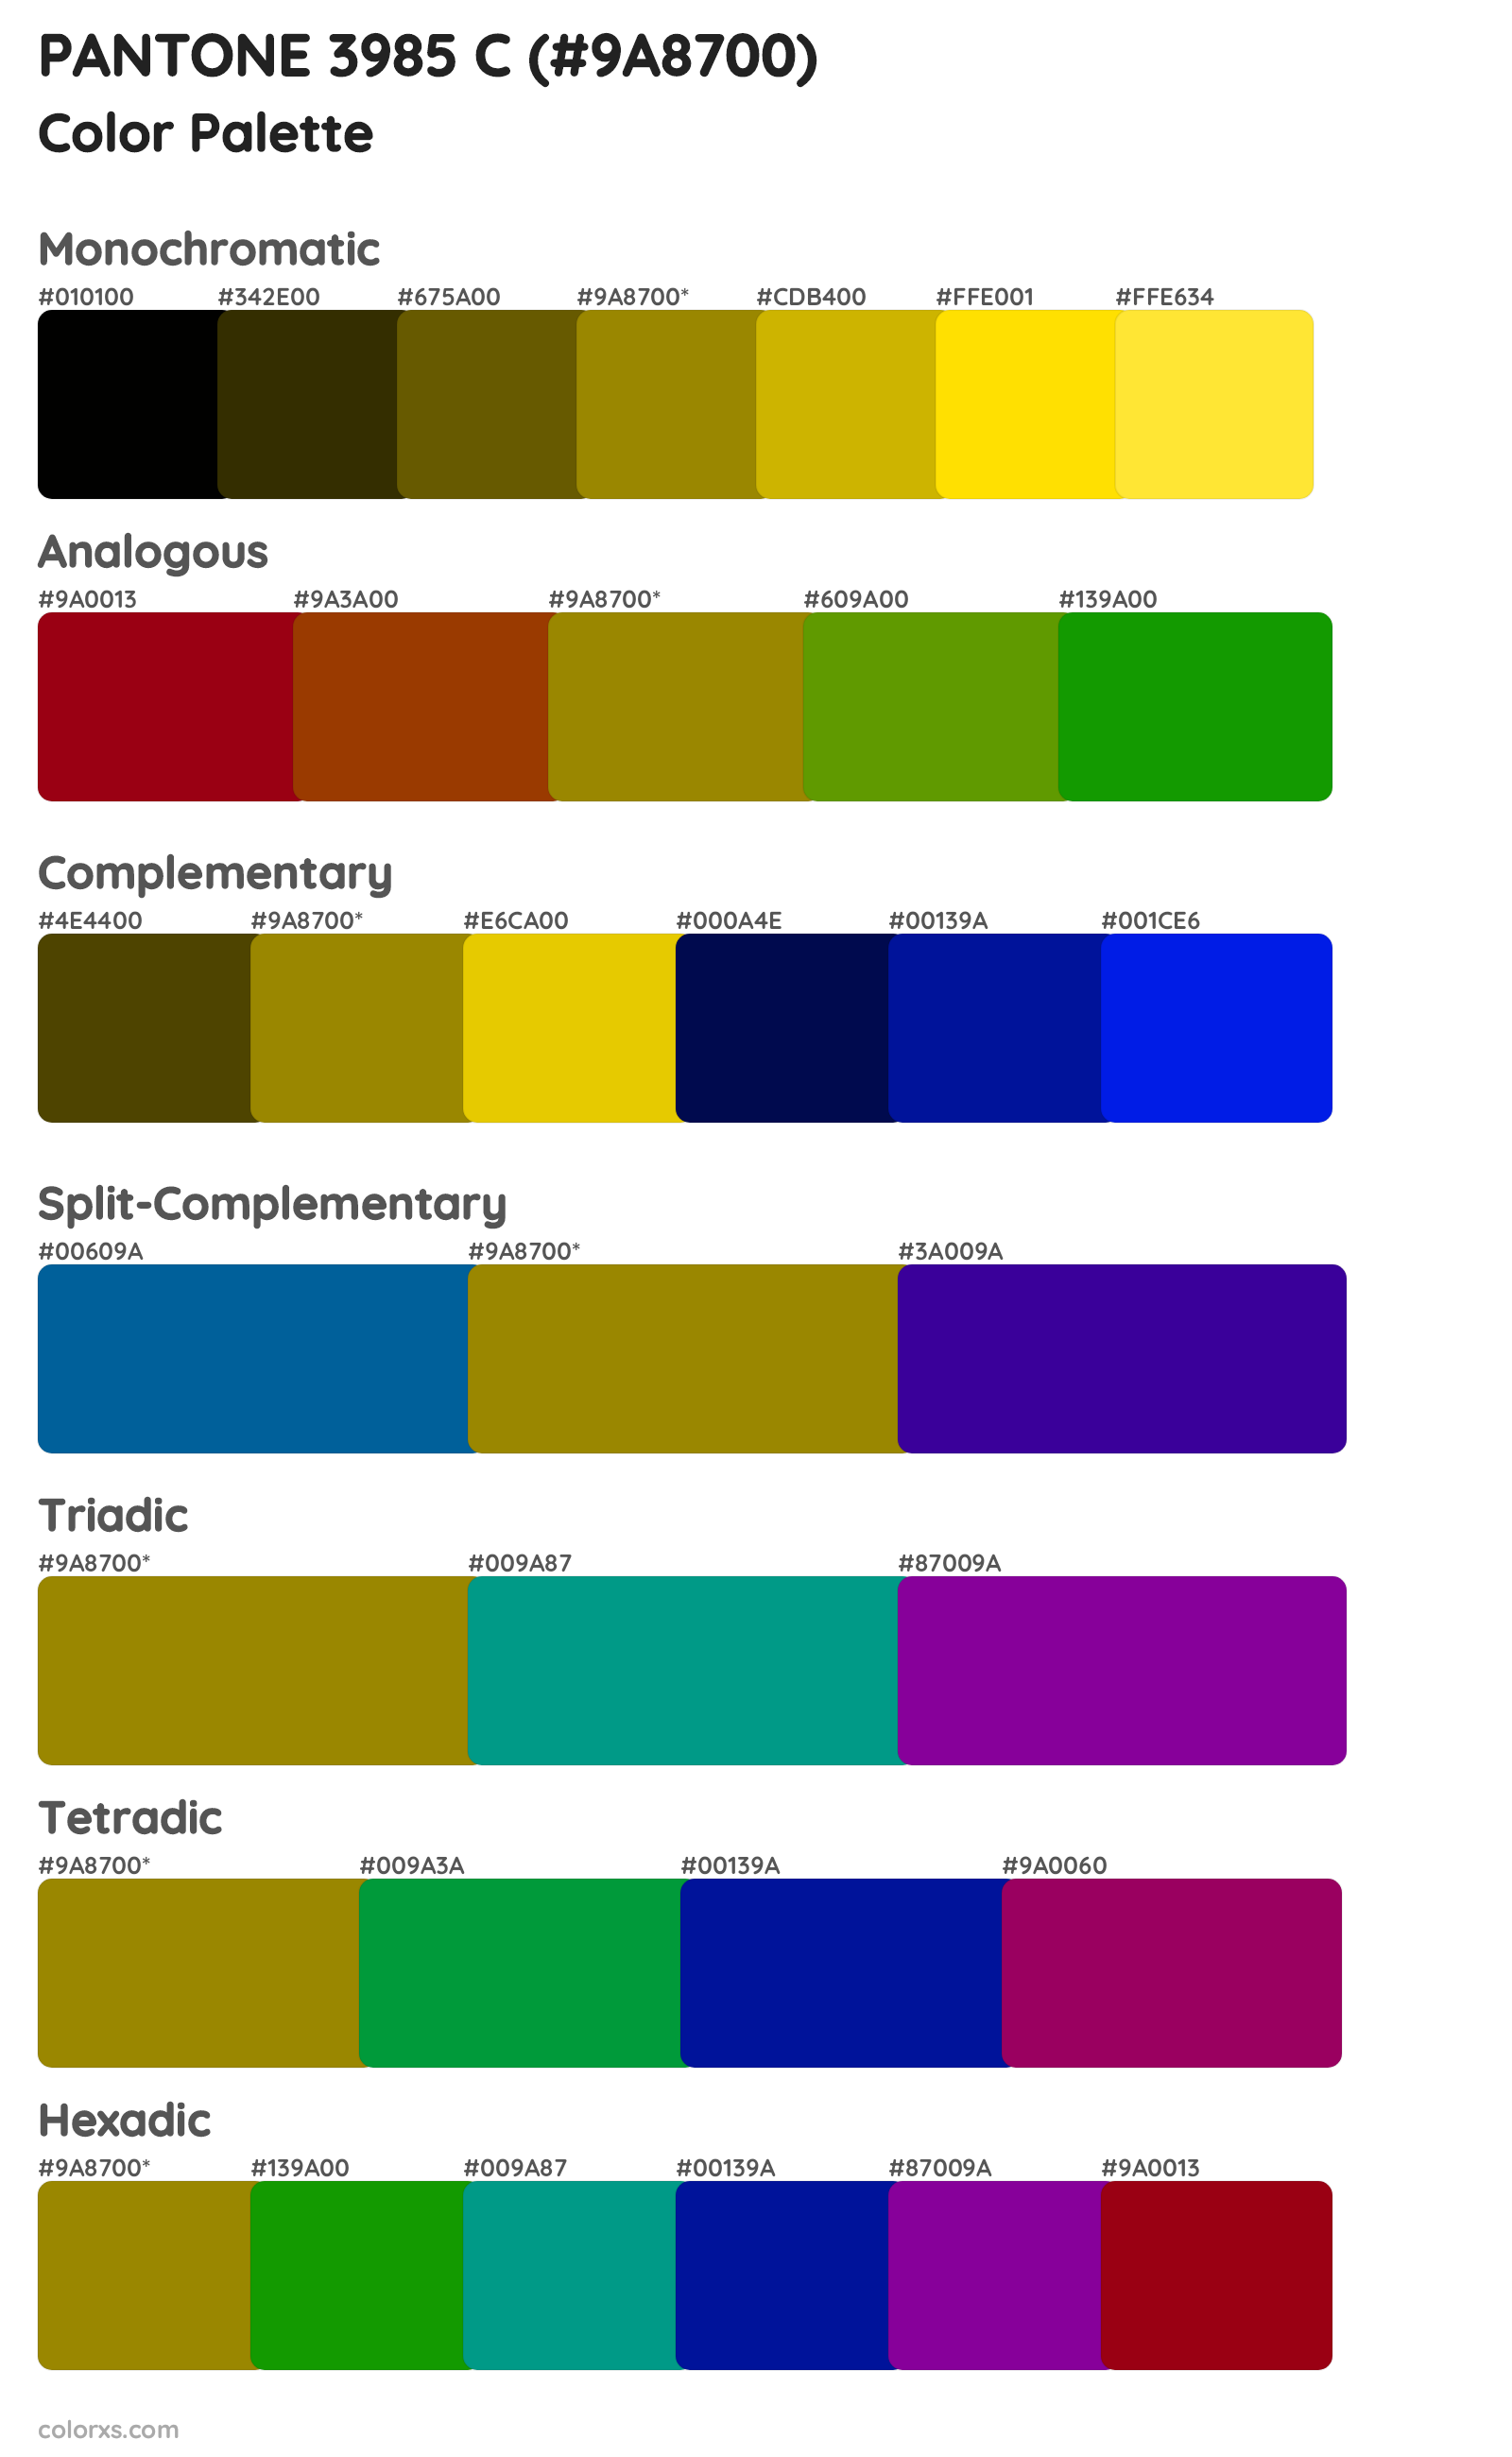 PANTONE 3985 C Color Scheme Palettes